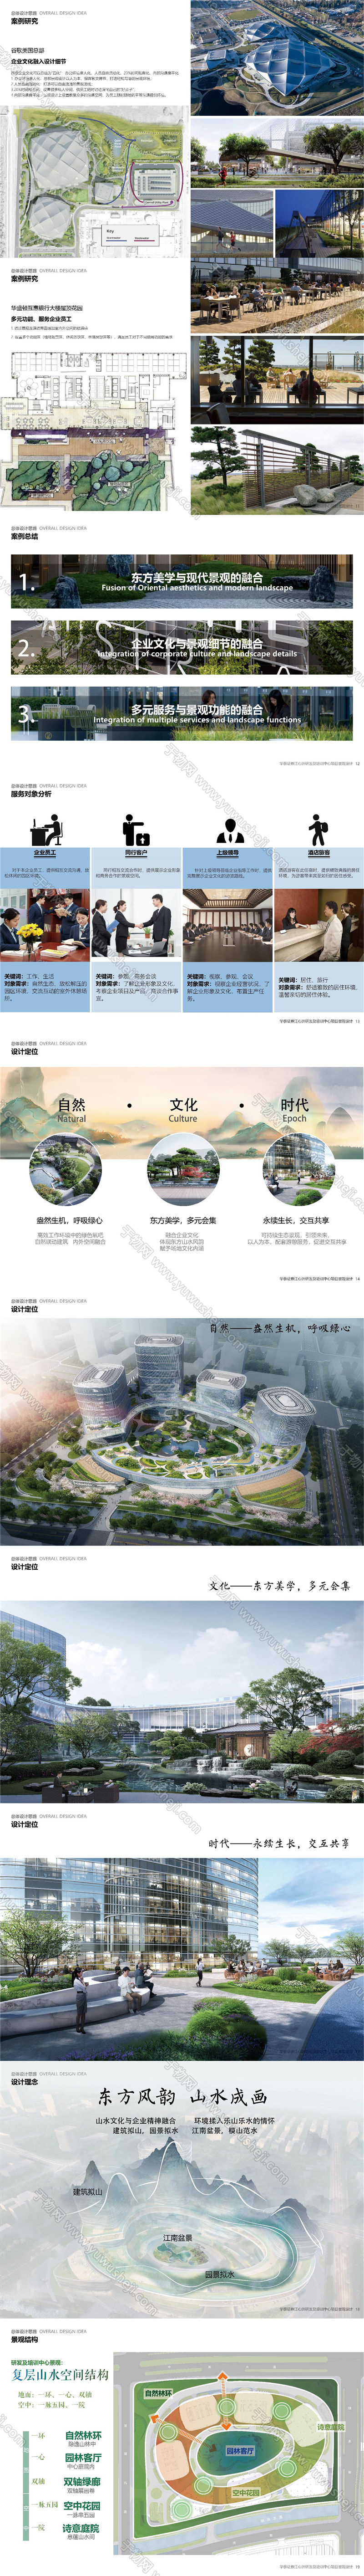 2022 南京华泰证券办公总部办公产业创业园景观方案设计文本.page019.Page11 20